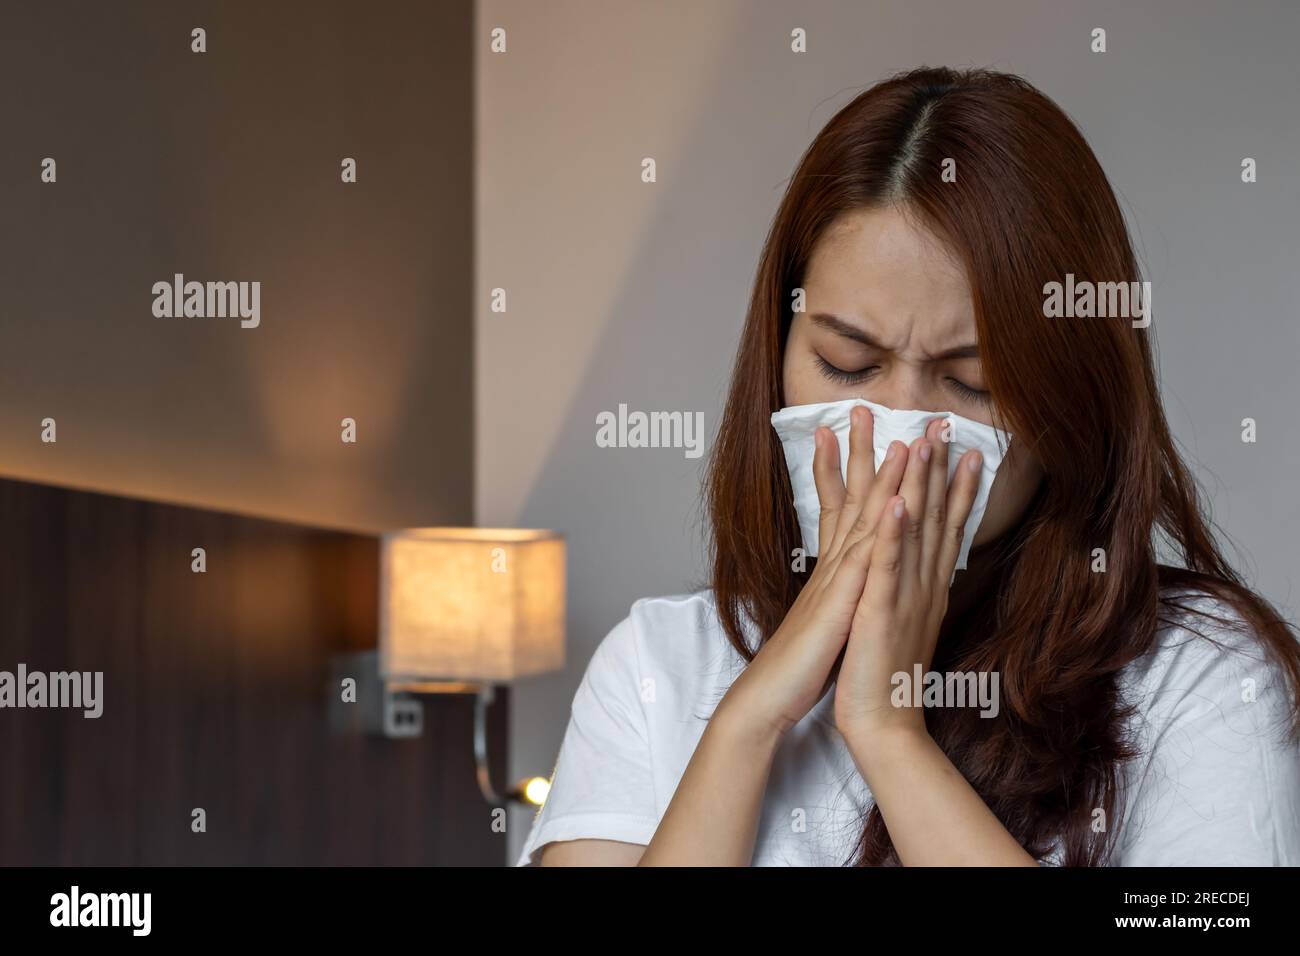 Bella donna asiatica che soffre di naso che cola o blocco nasale. Comune raffreddore, sinusite o influenza paziente con rinite. Foto Stock